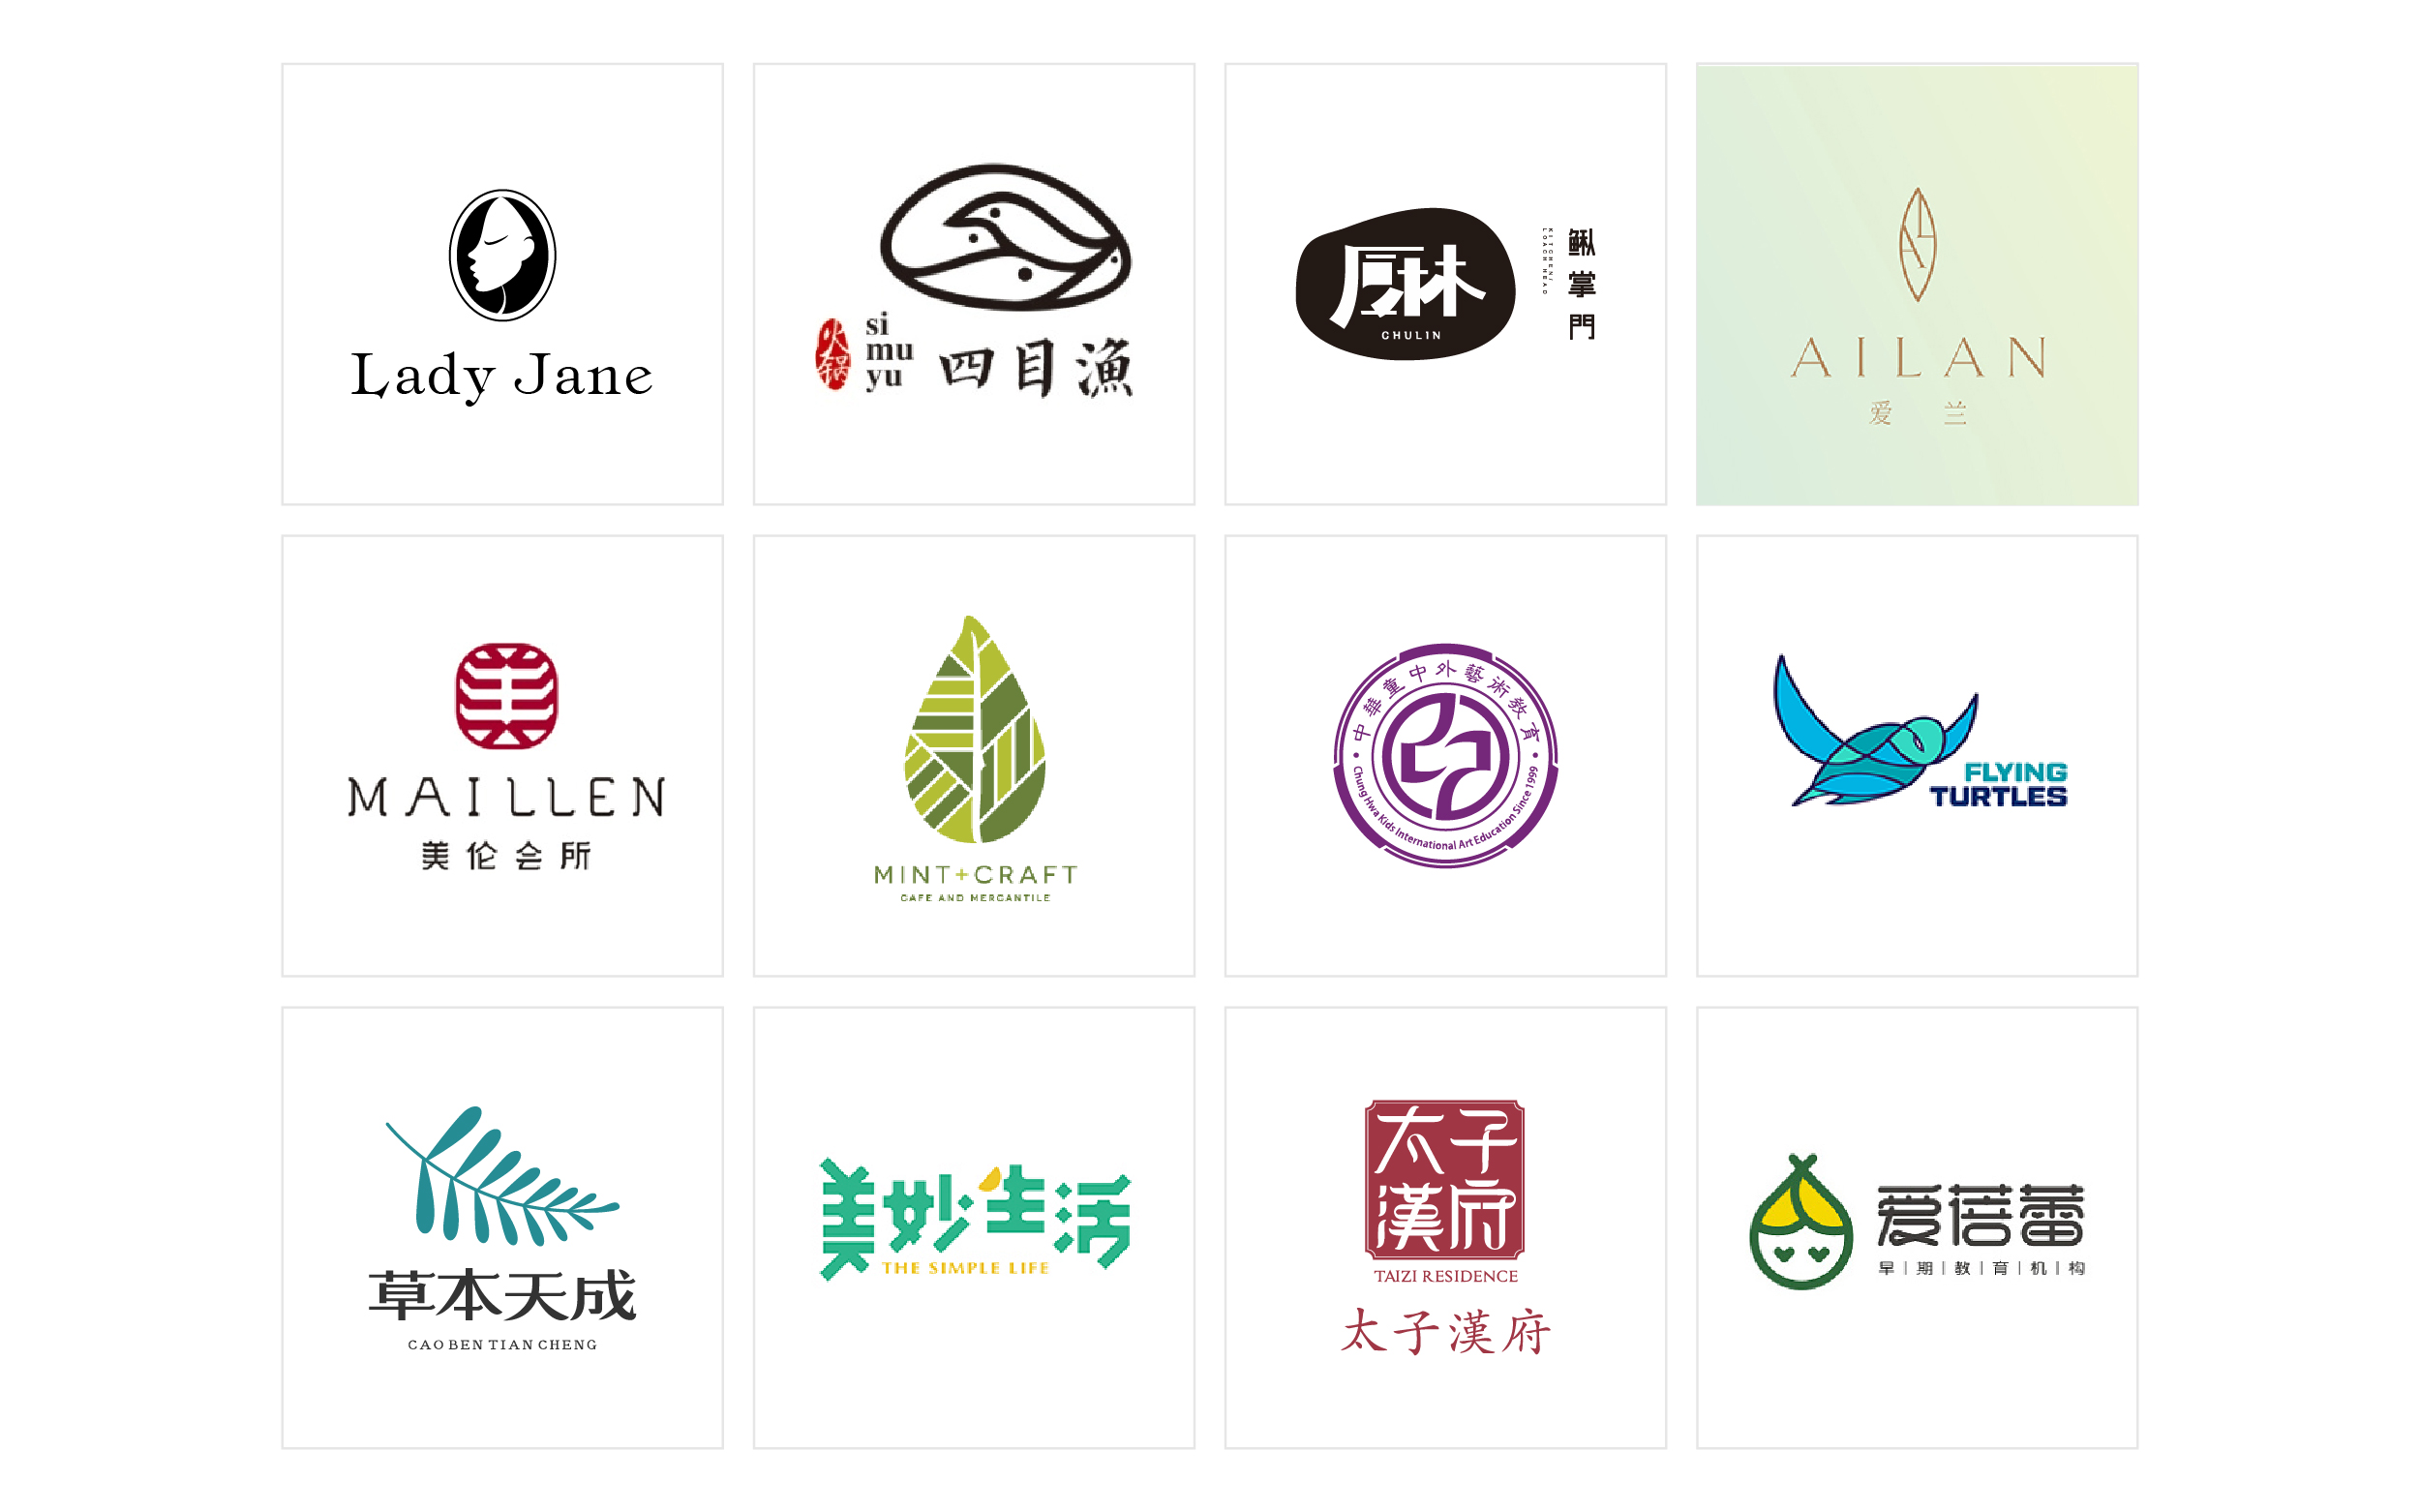 特价餐饮企业品牌标志logo设计公司标识商标设计字体设计